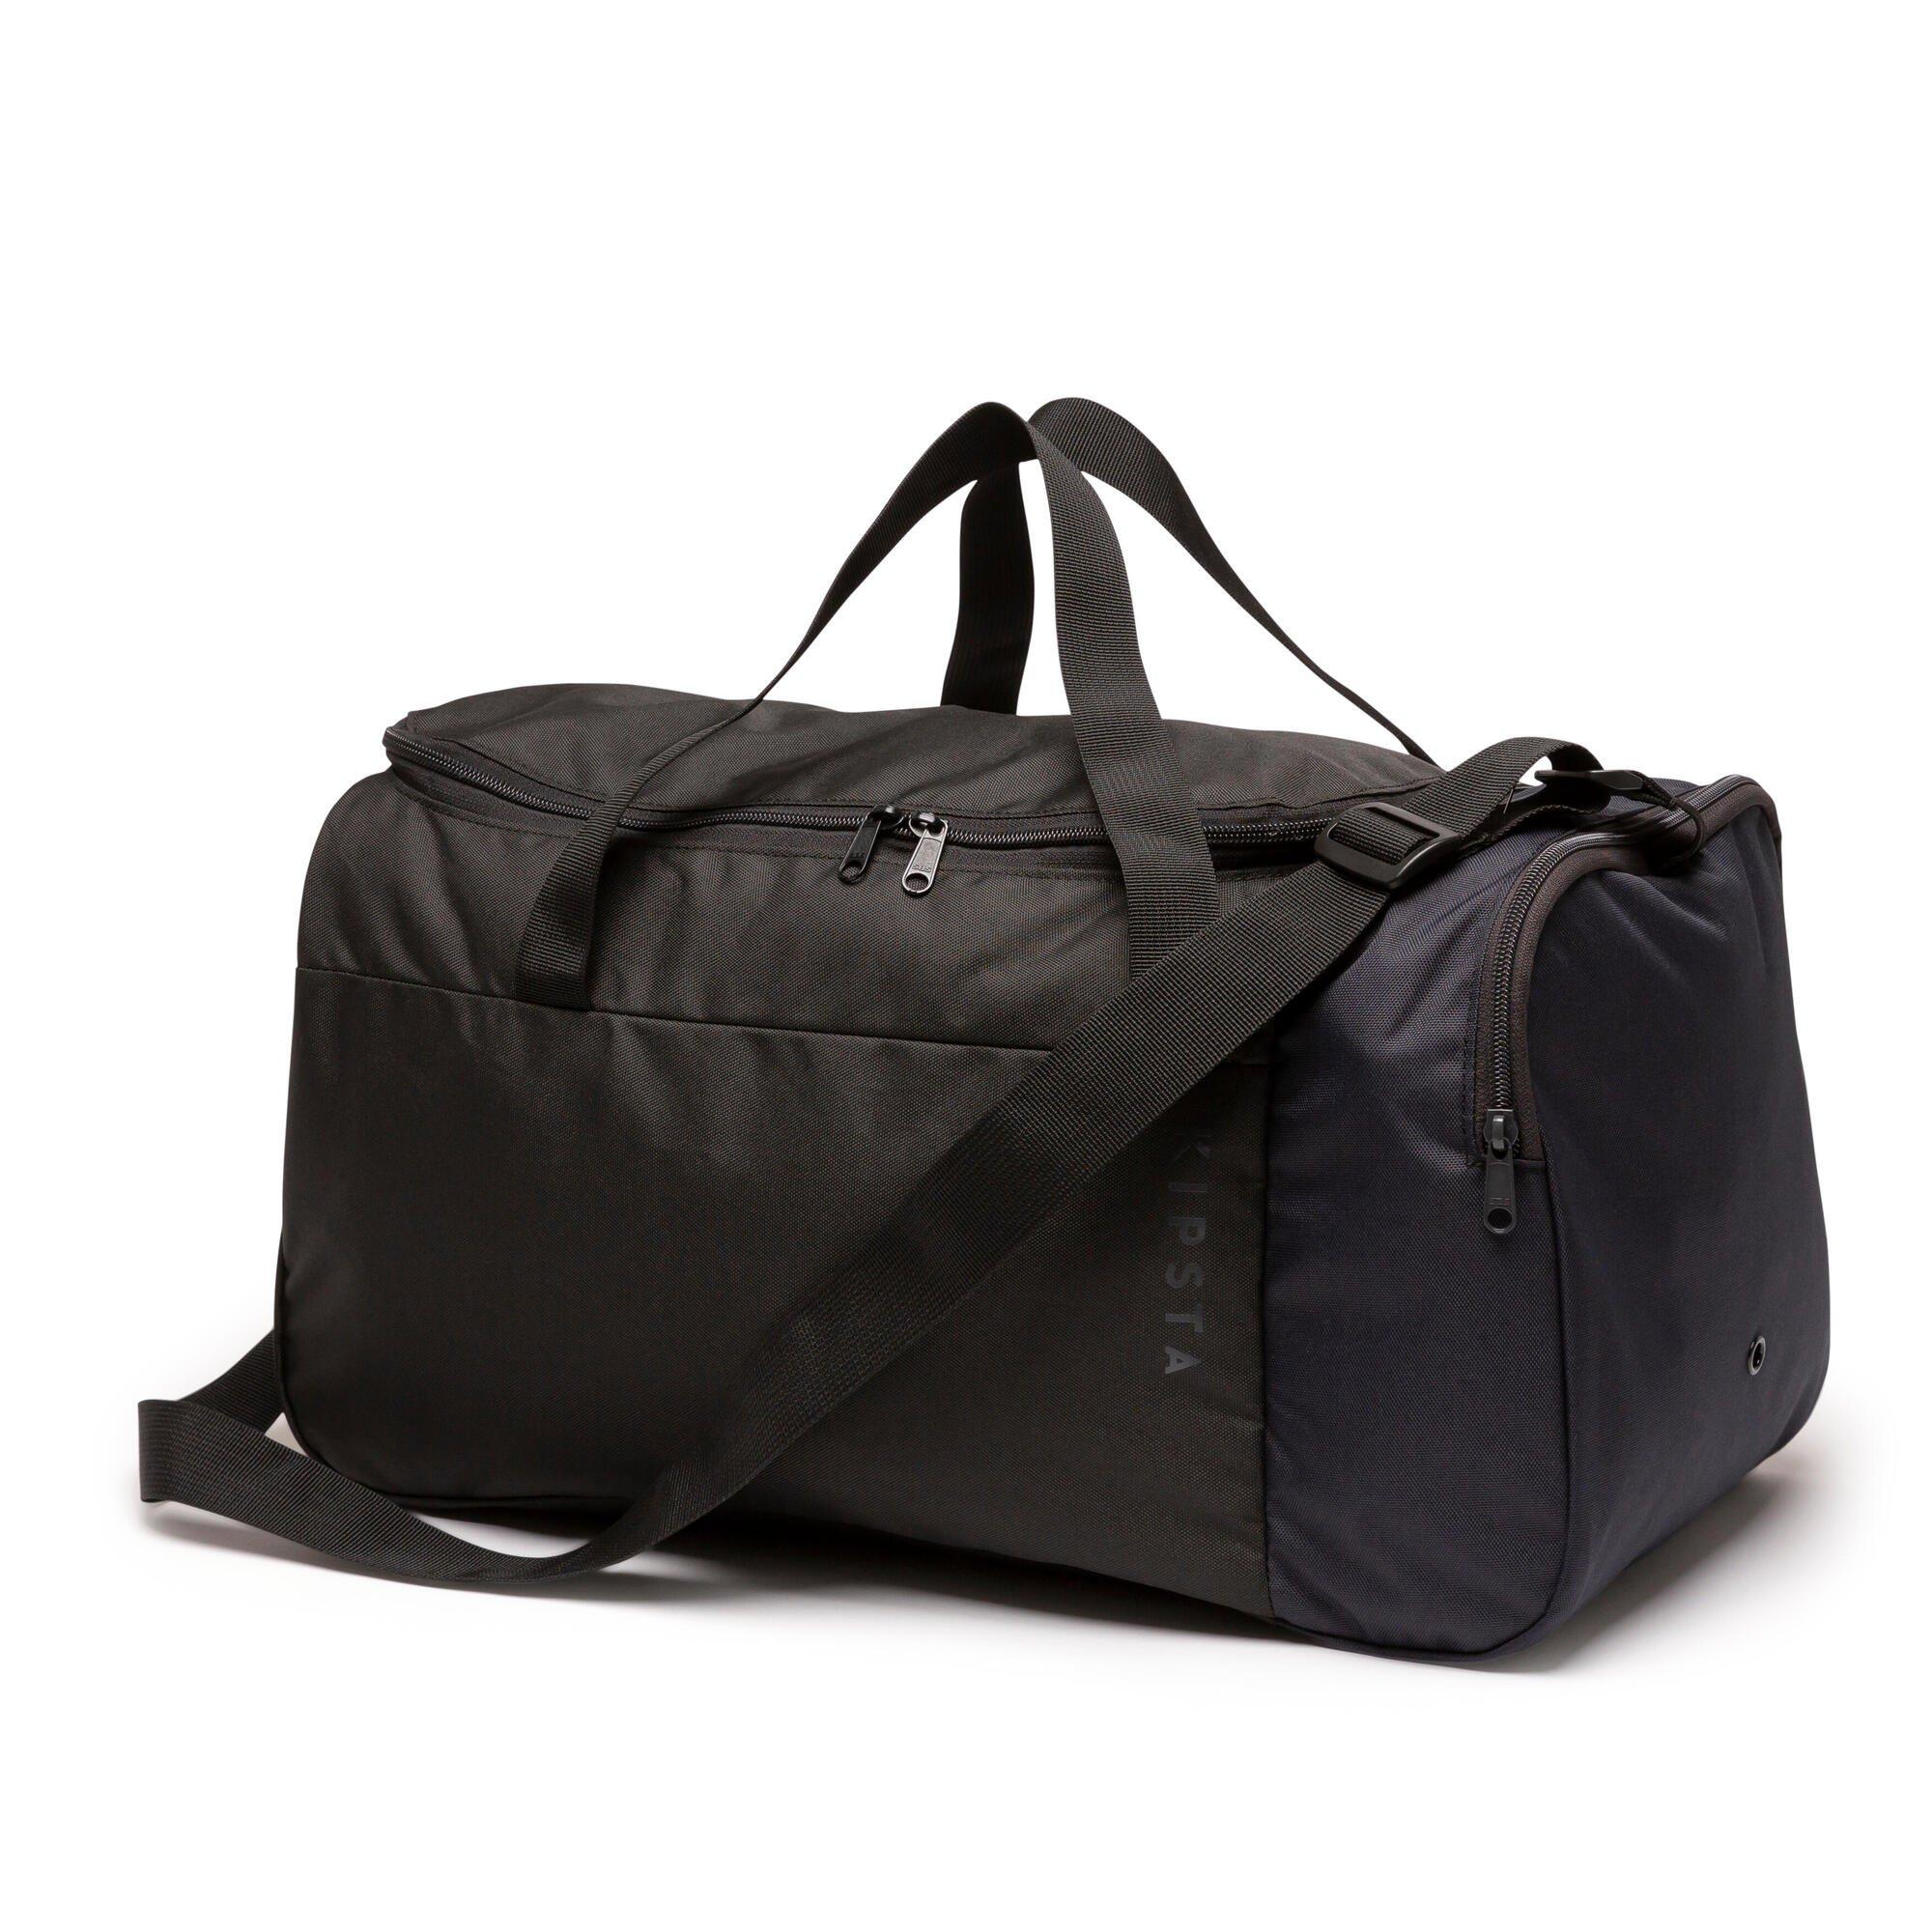 Спортивная сумка Decathlon Essential 35 л. Kipsta, черный сумка c191 26 kingth goldn